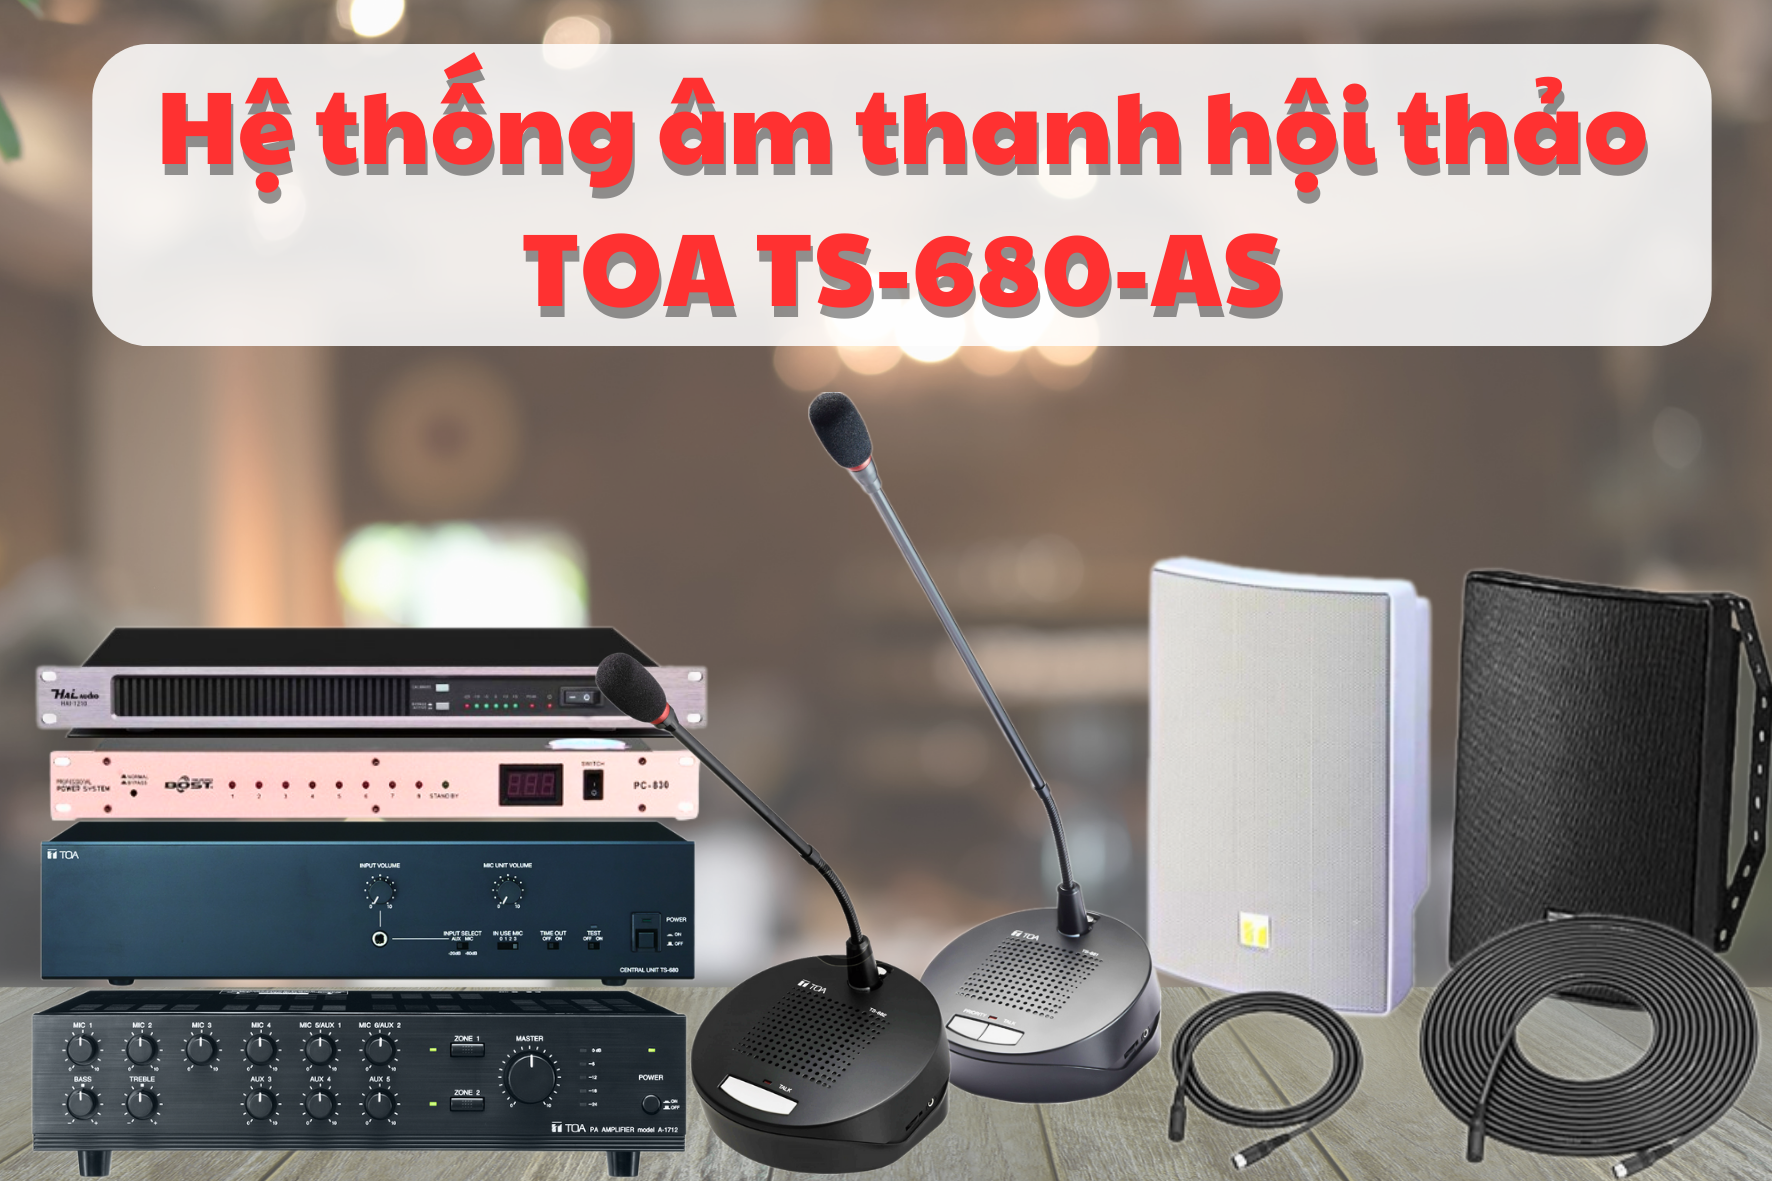 Dàn âm thanh hội thảo hãng TOA TS-680-AS